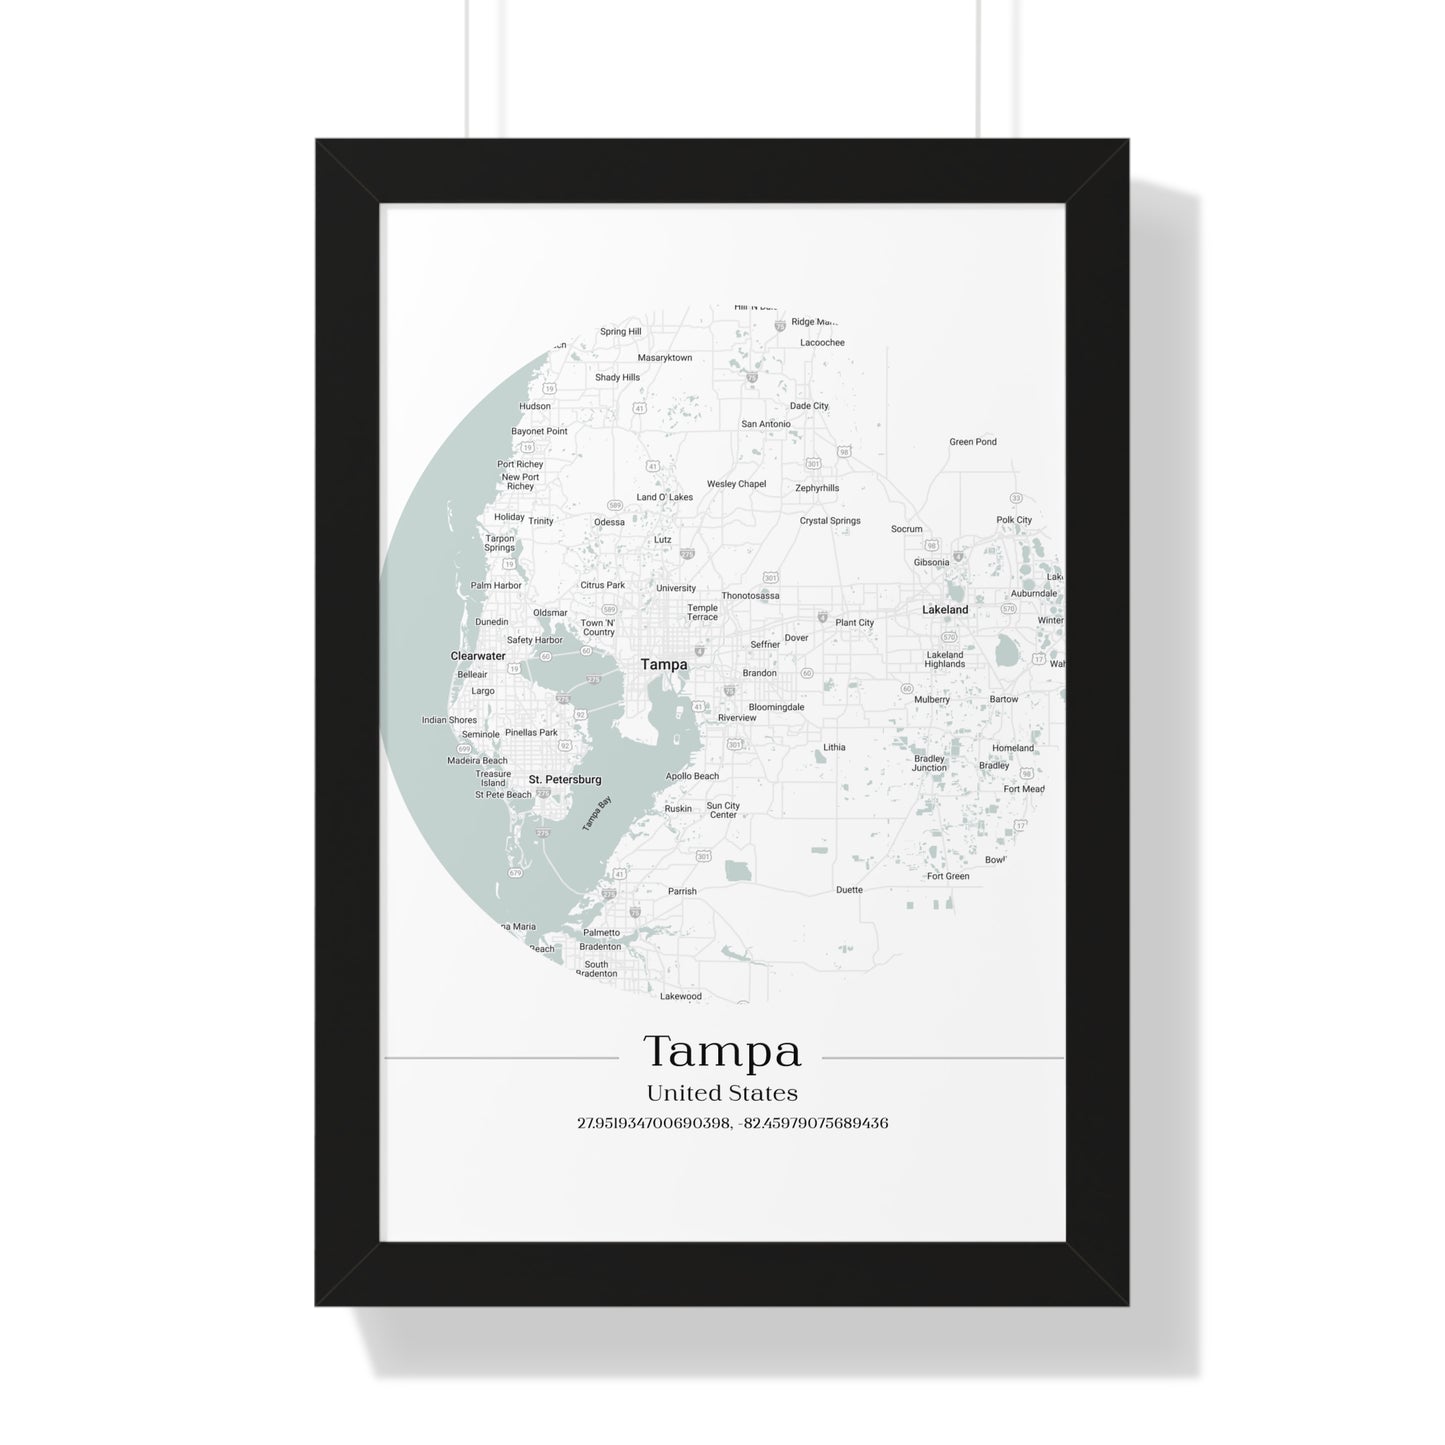 Tampa - Framed Vertical Poster